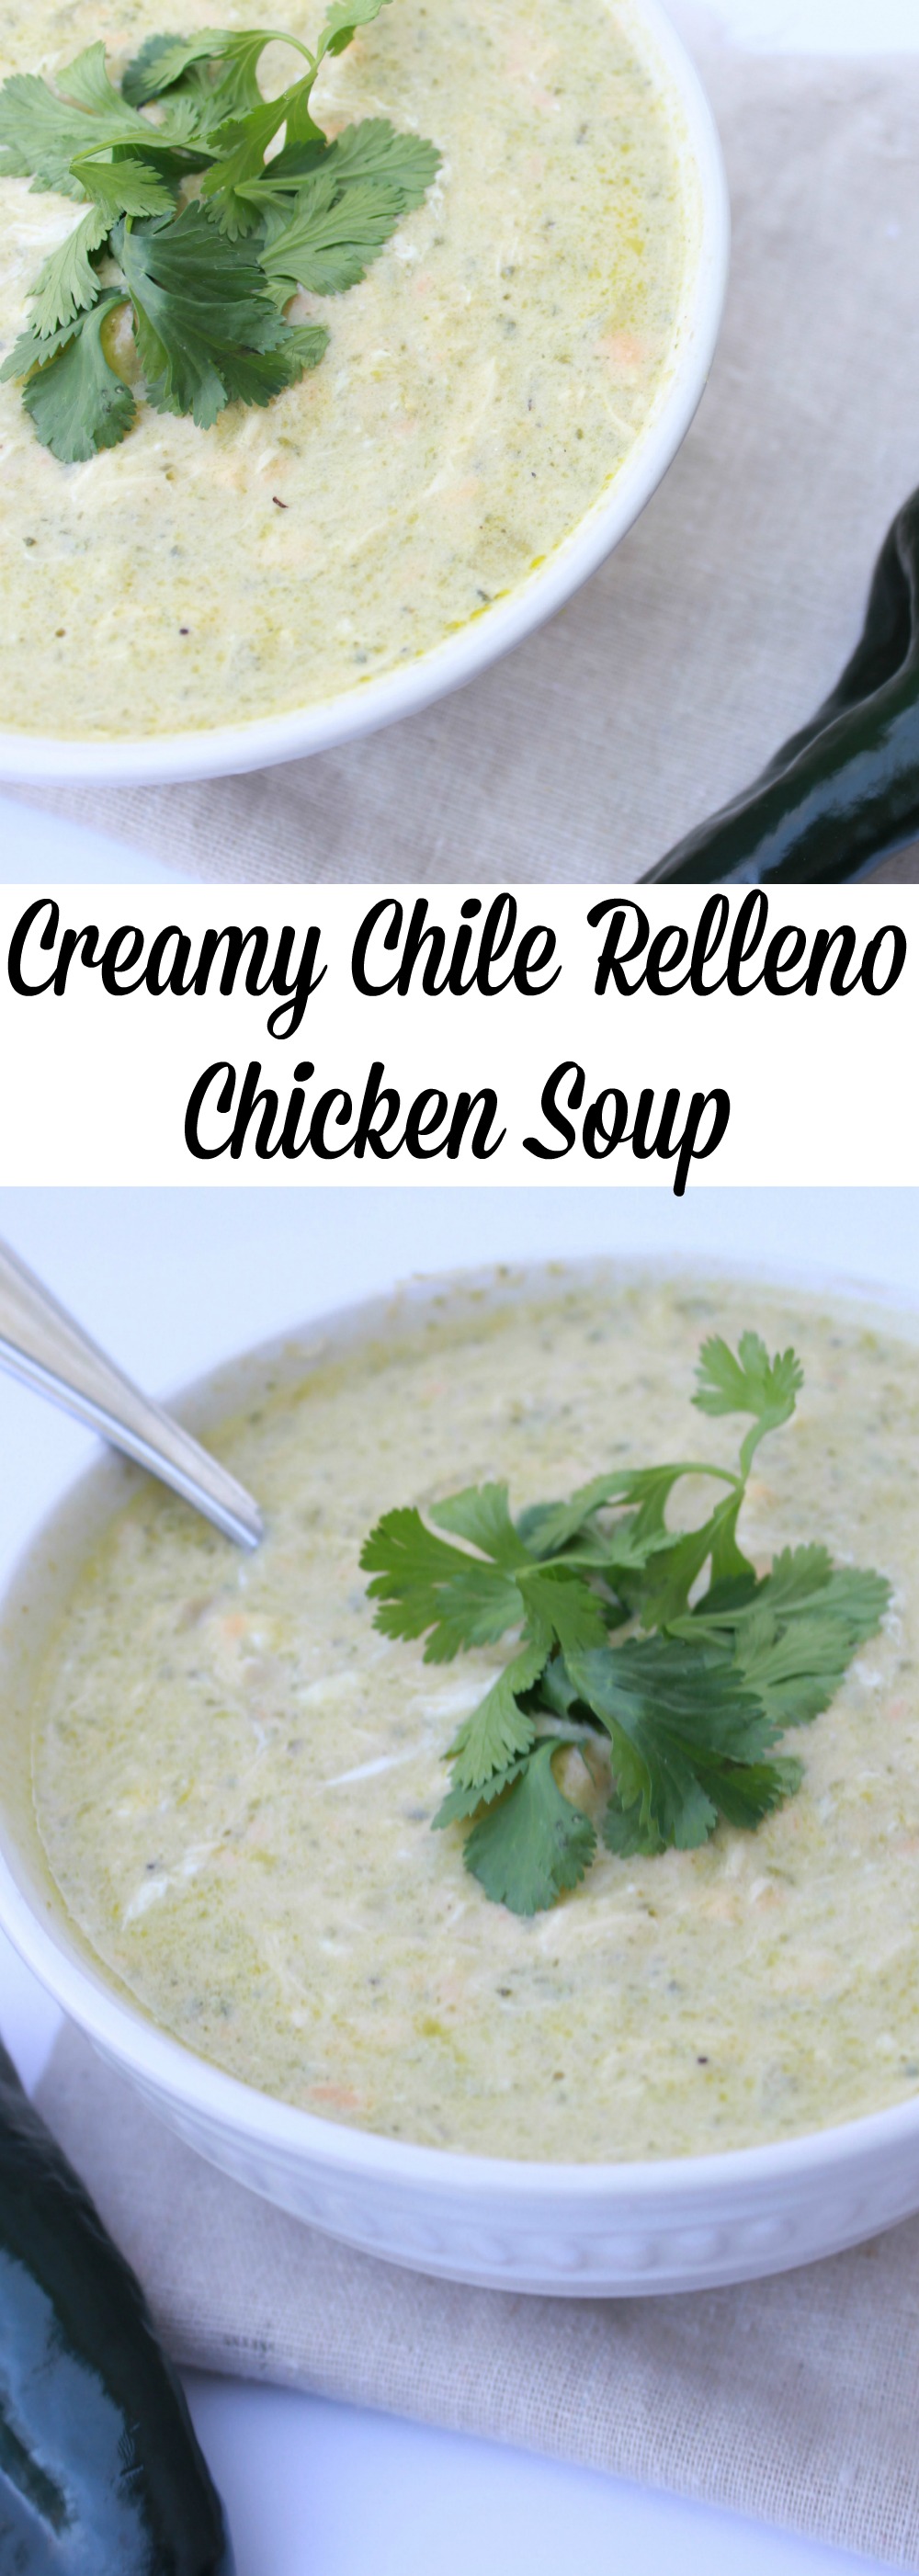 Creamy Chile Relleno Chicken Soup 